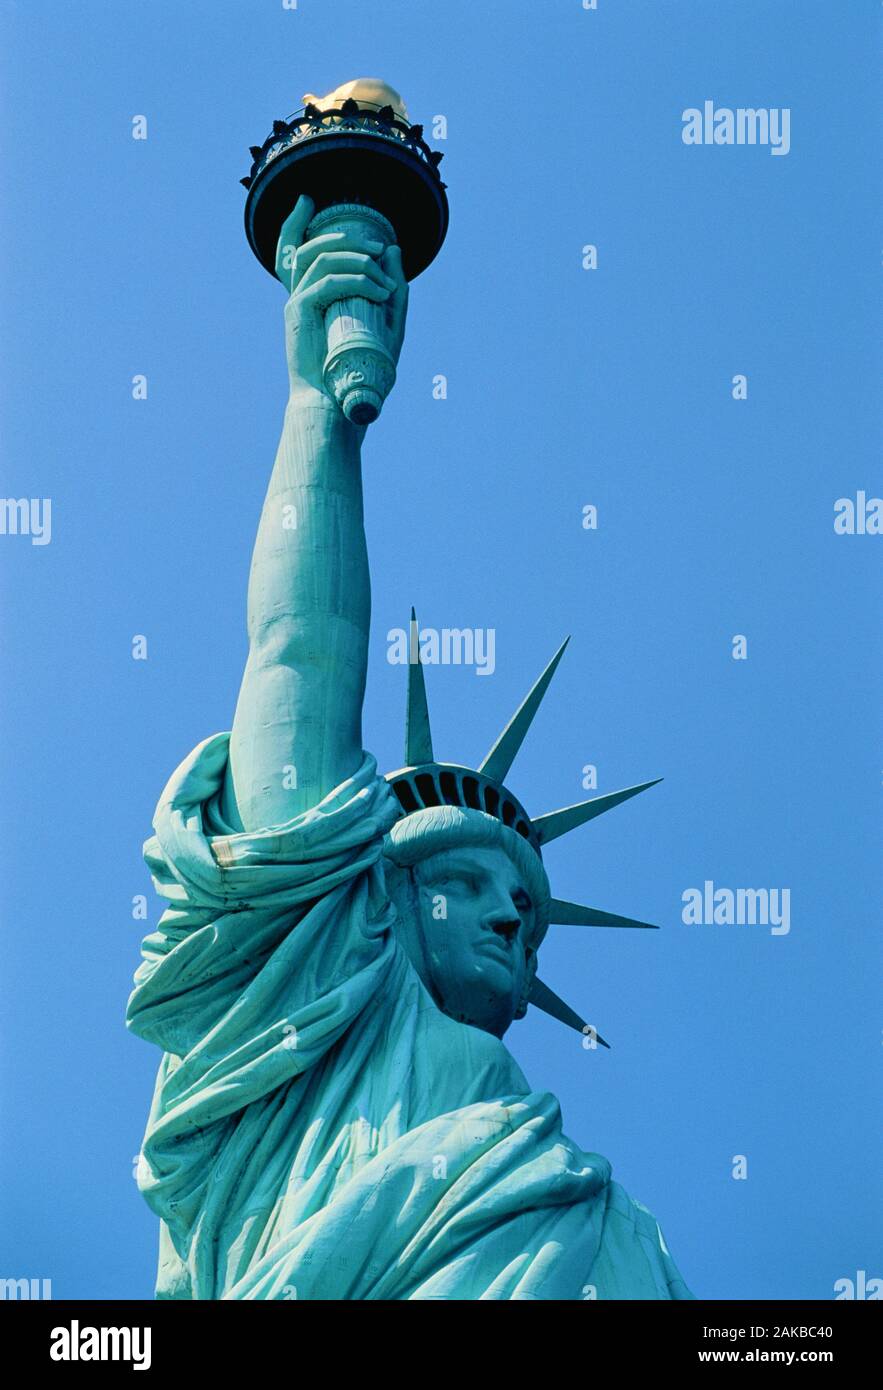 La estatua de la libertad contra el azul claro del cielo, la ciudad de Nueva York, EE.UU. Foto de stock